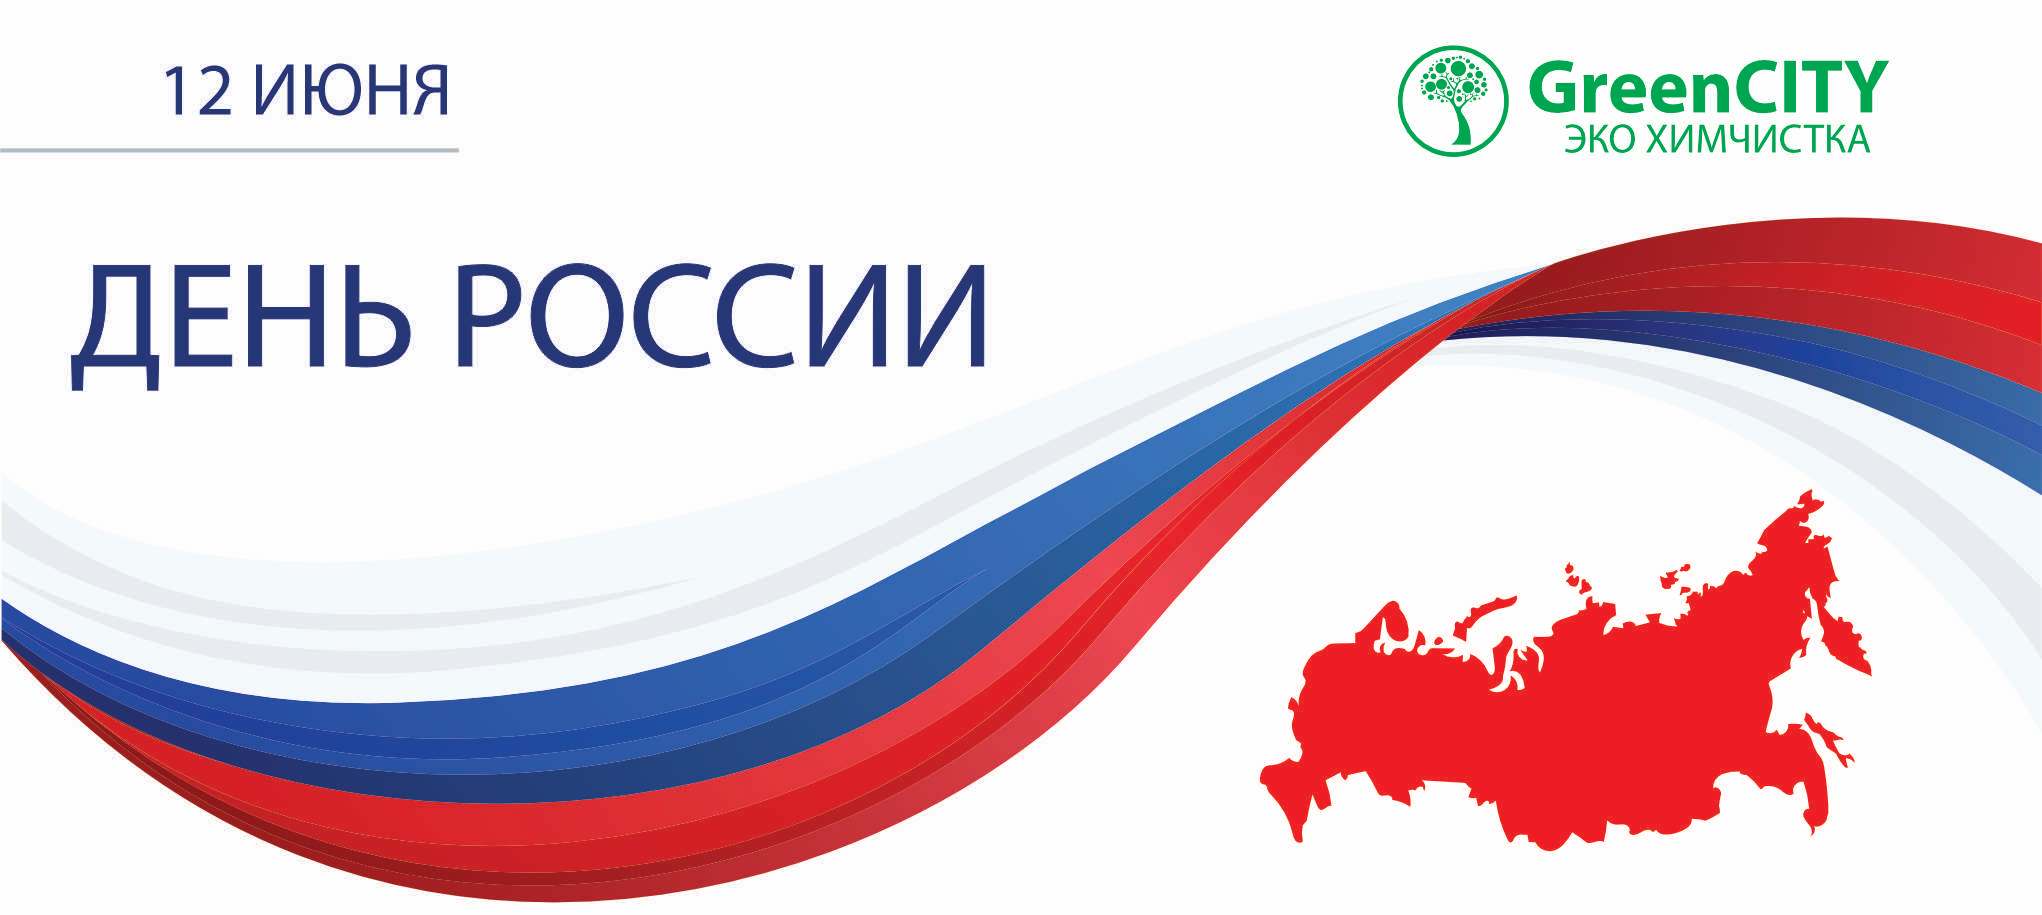 12 июня День России - GreenCity